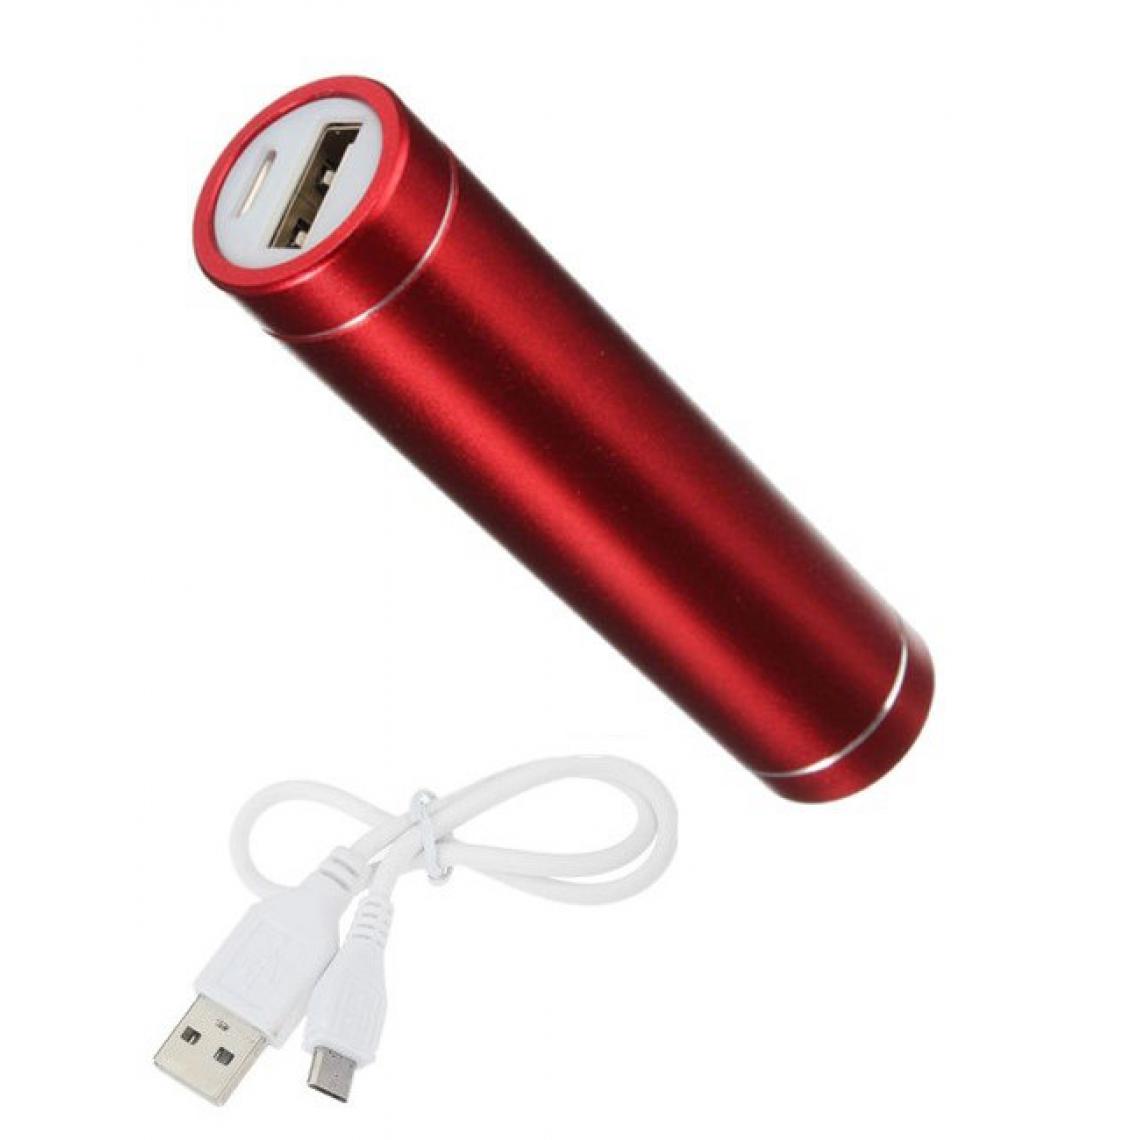 Shot - Batterie Chargeur Externe pour SAMSUNG Galaxy A40 Power Bank 2600mAh avec Cable USB/Mirco USB Secours Telephone (ROUGE) - Chargeur secteur téléphone